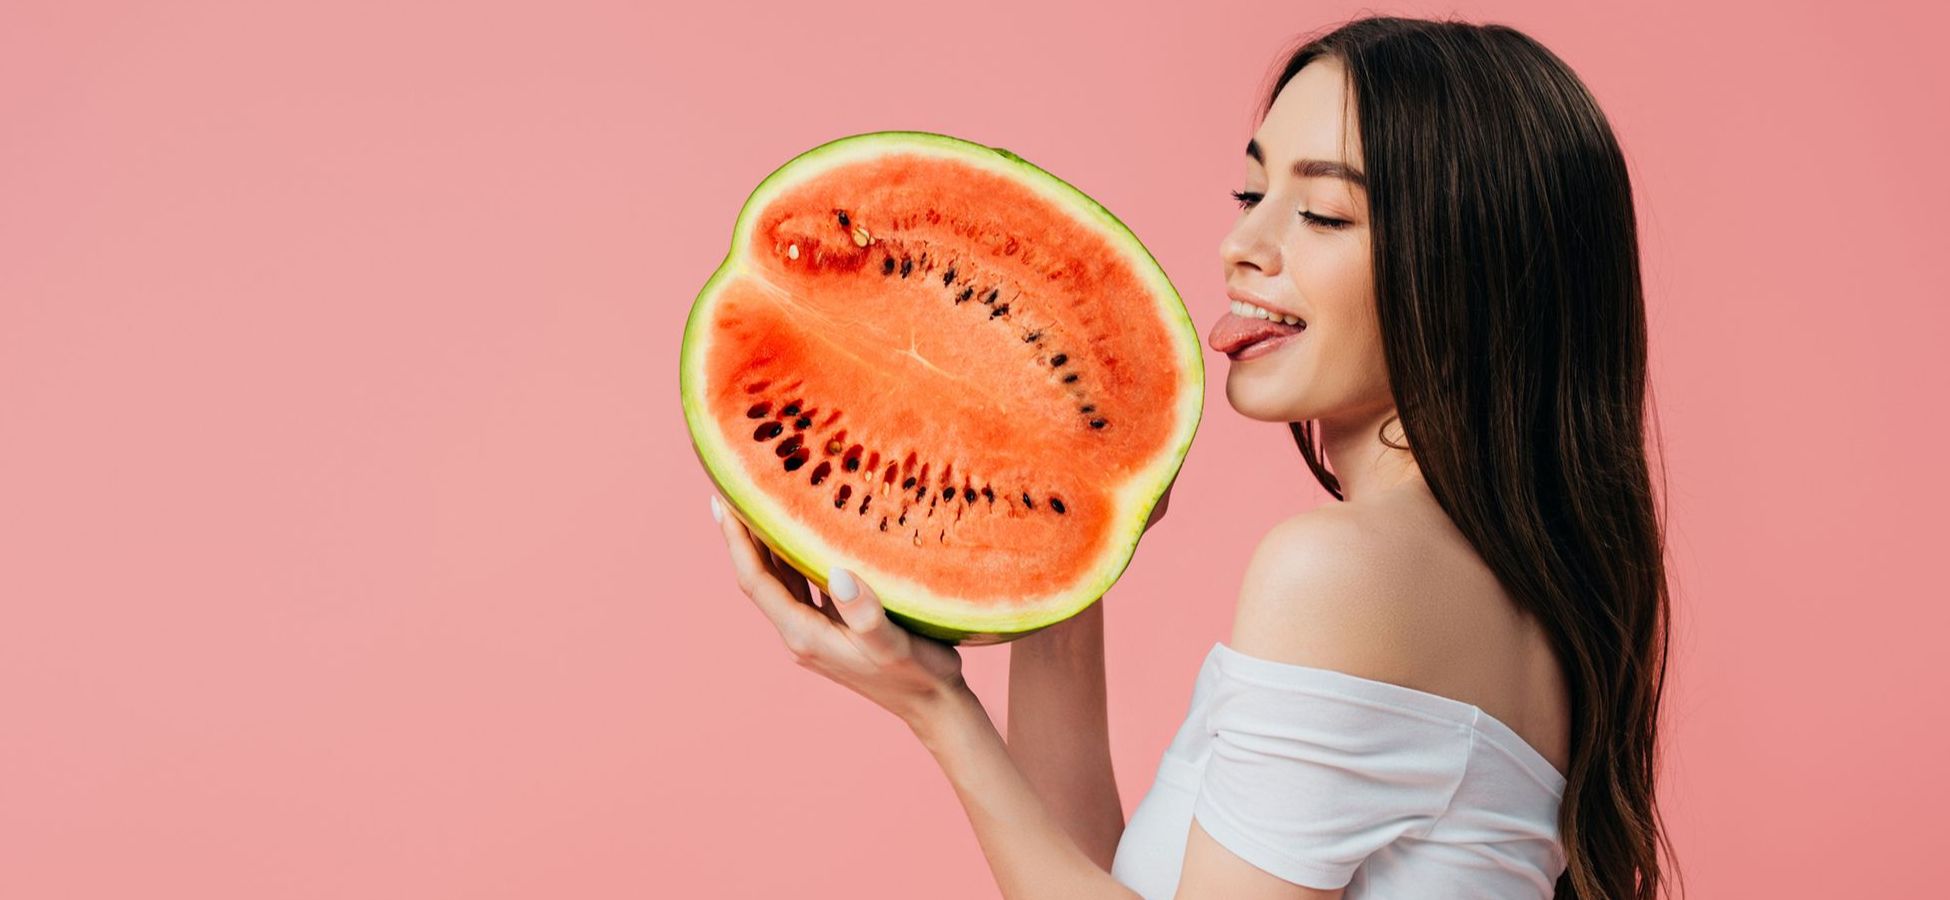 Frau leckt an einer halben Melone